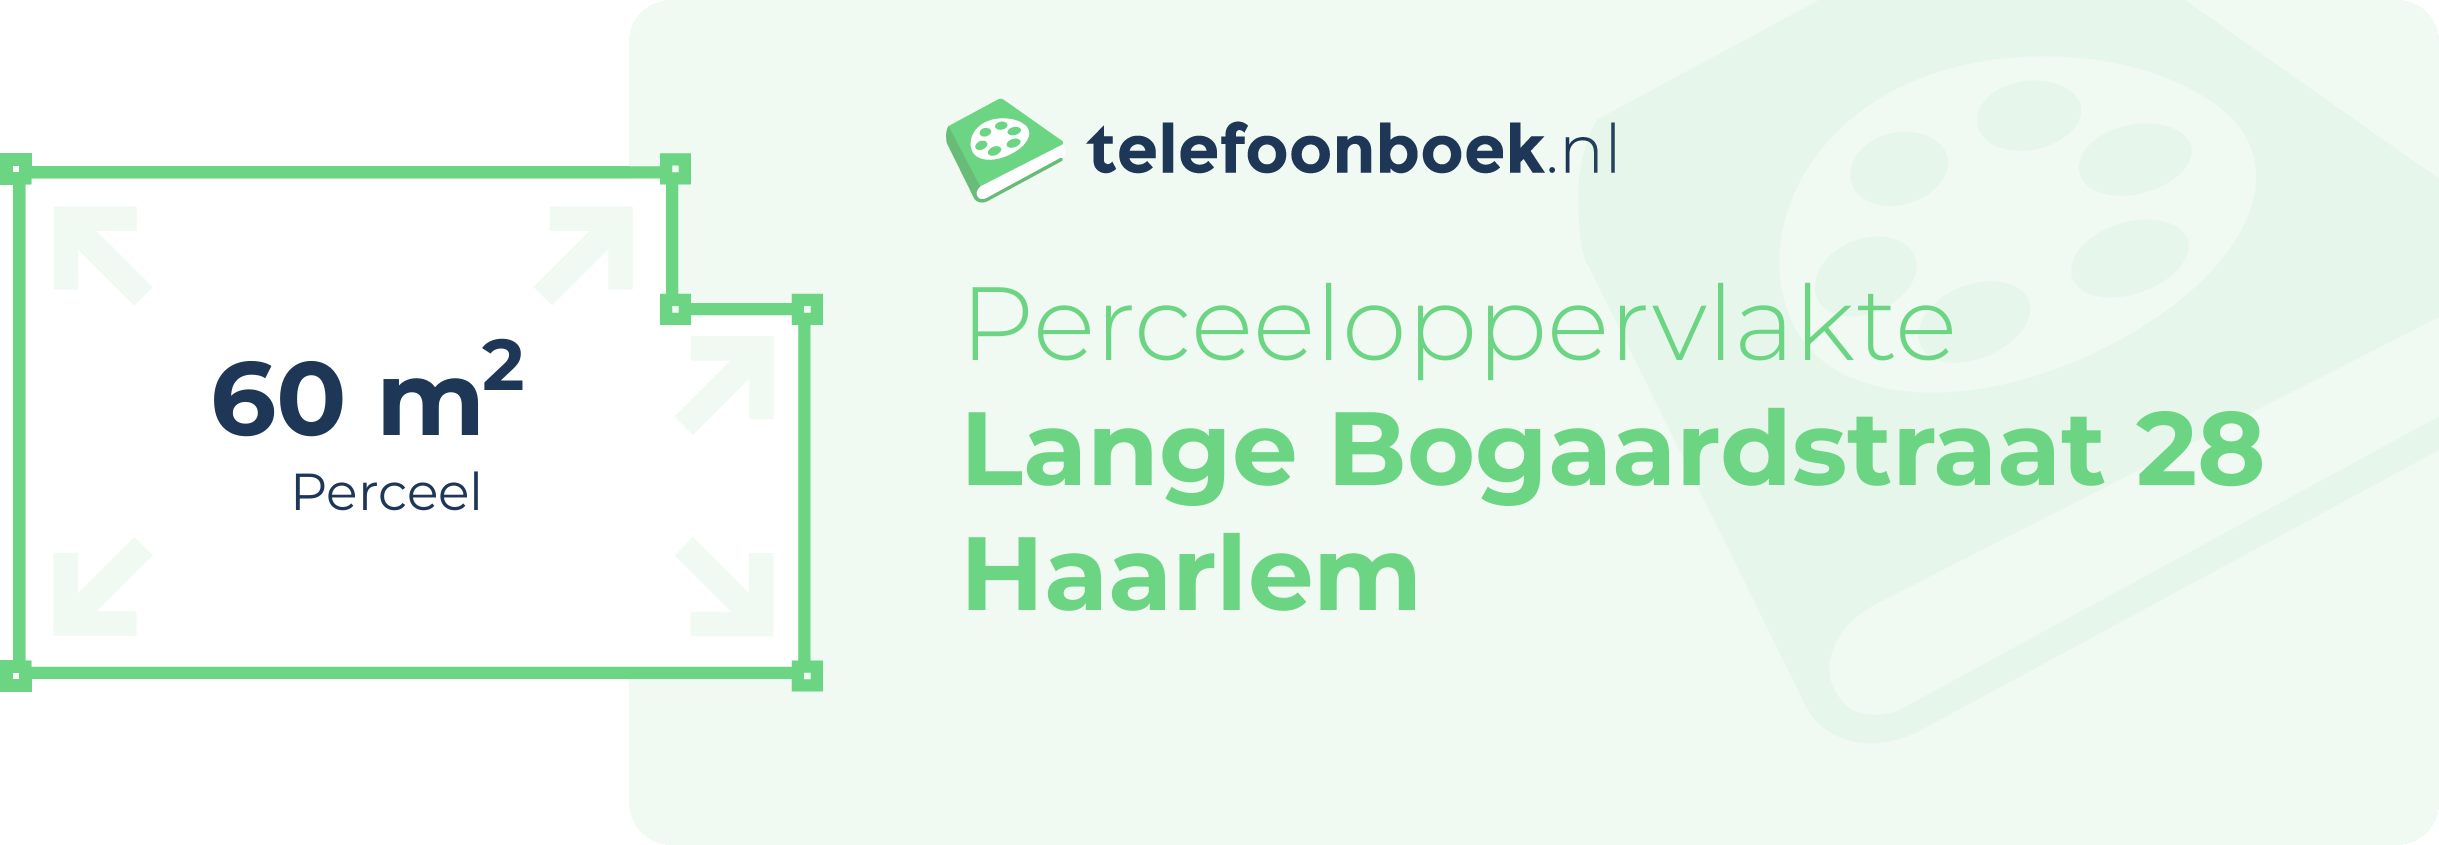 Perceeloppervlakte Lange Bogaardstraat 28 Haarlem